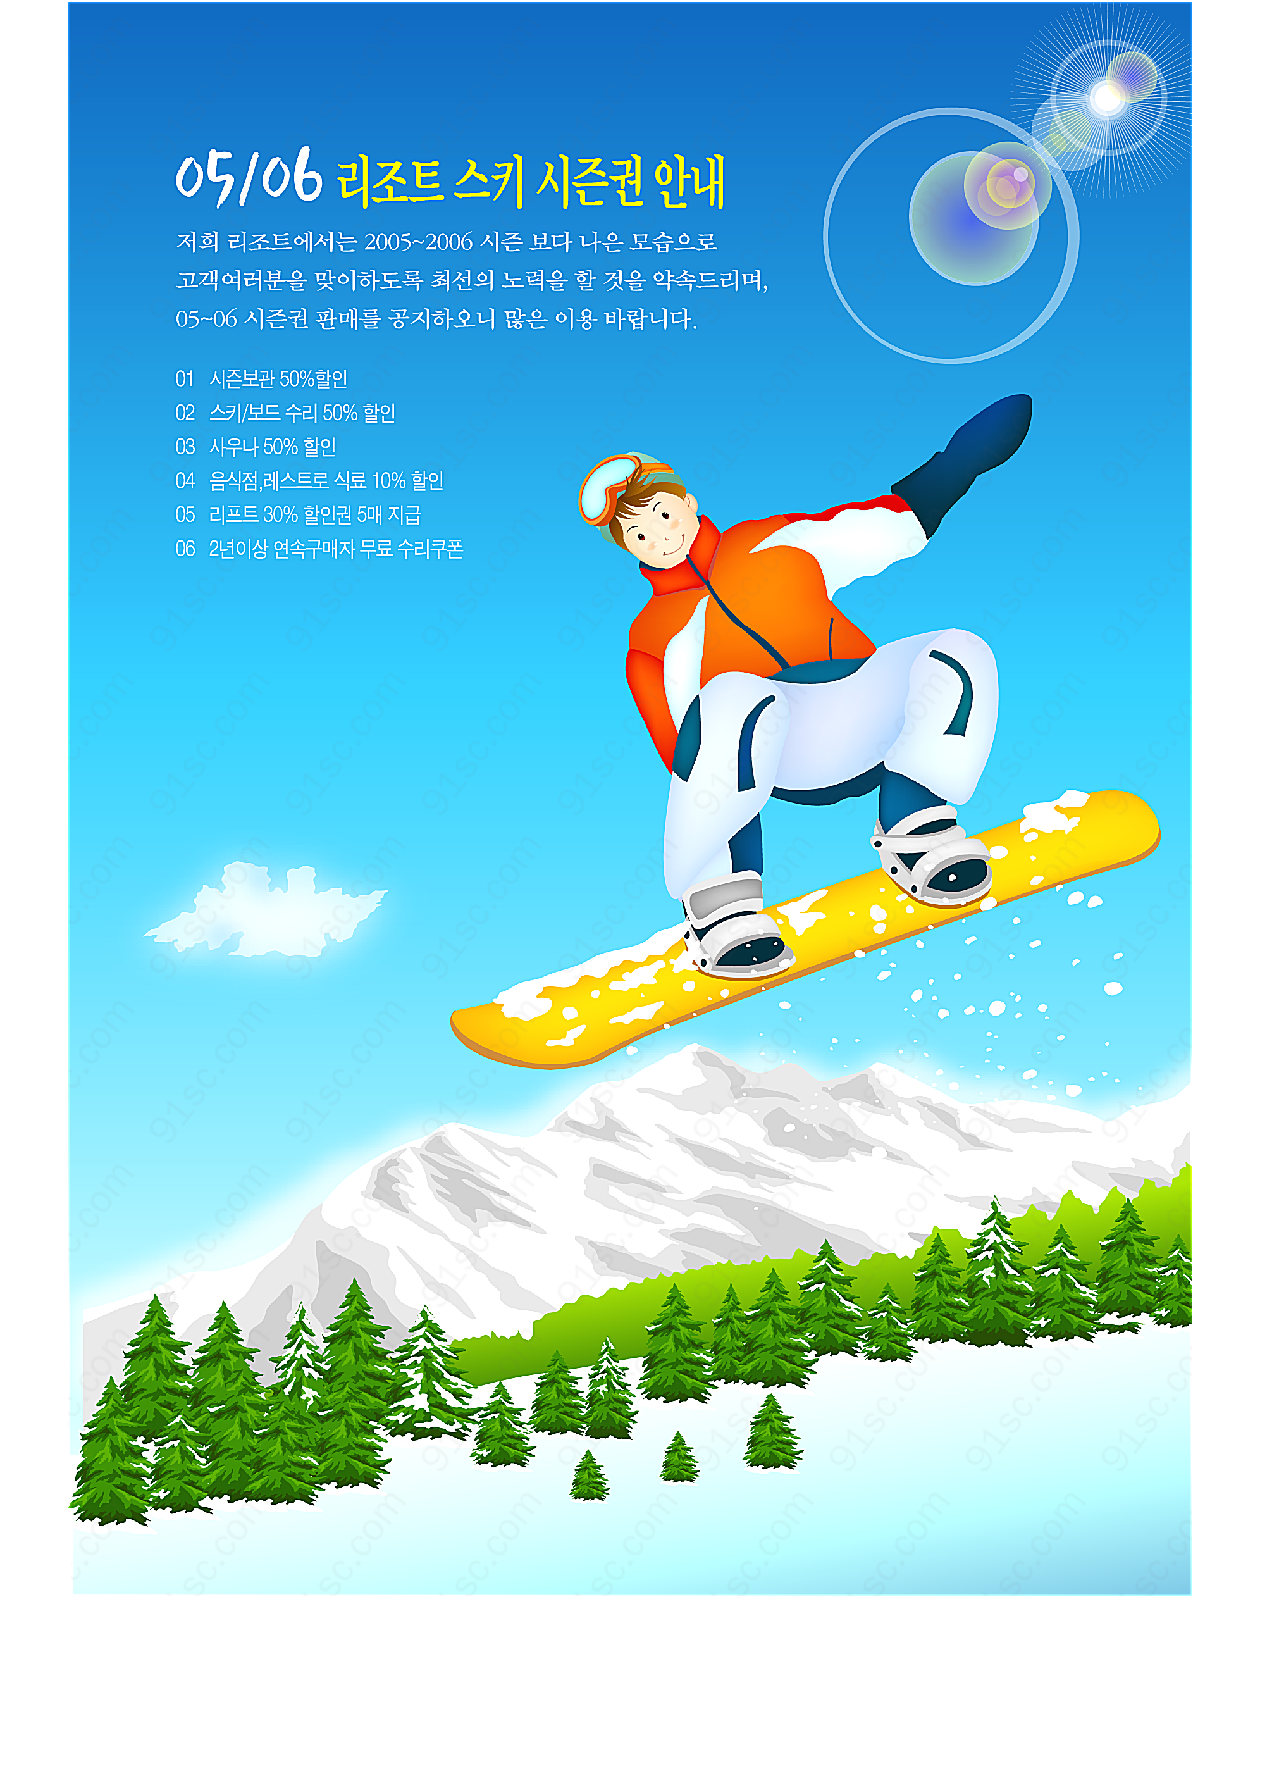 冬季滑雪运动_9矢量体育运动